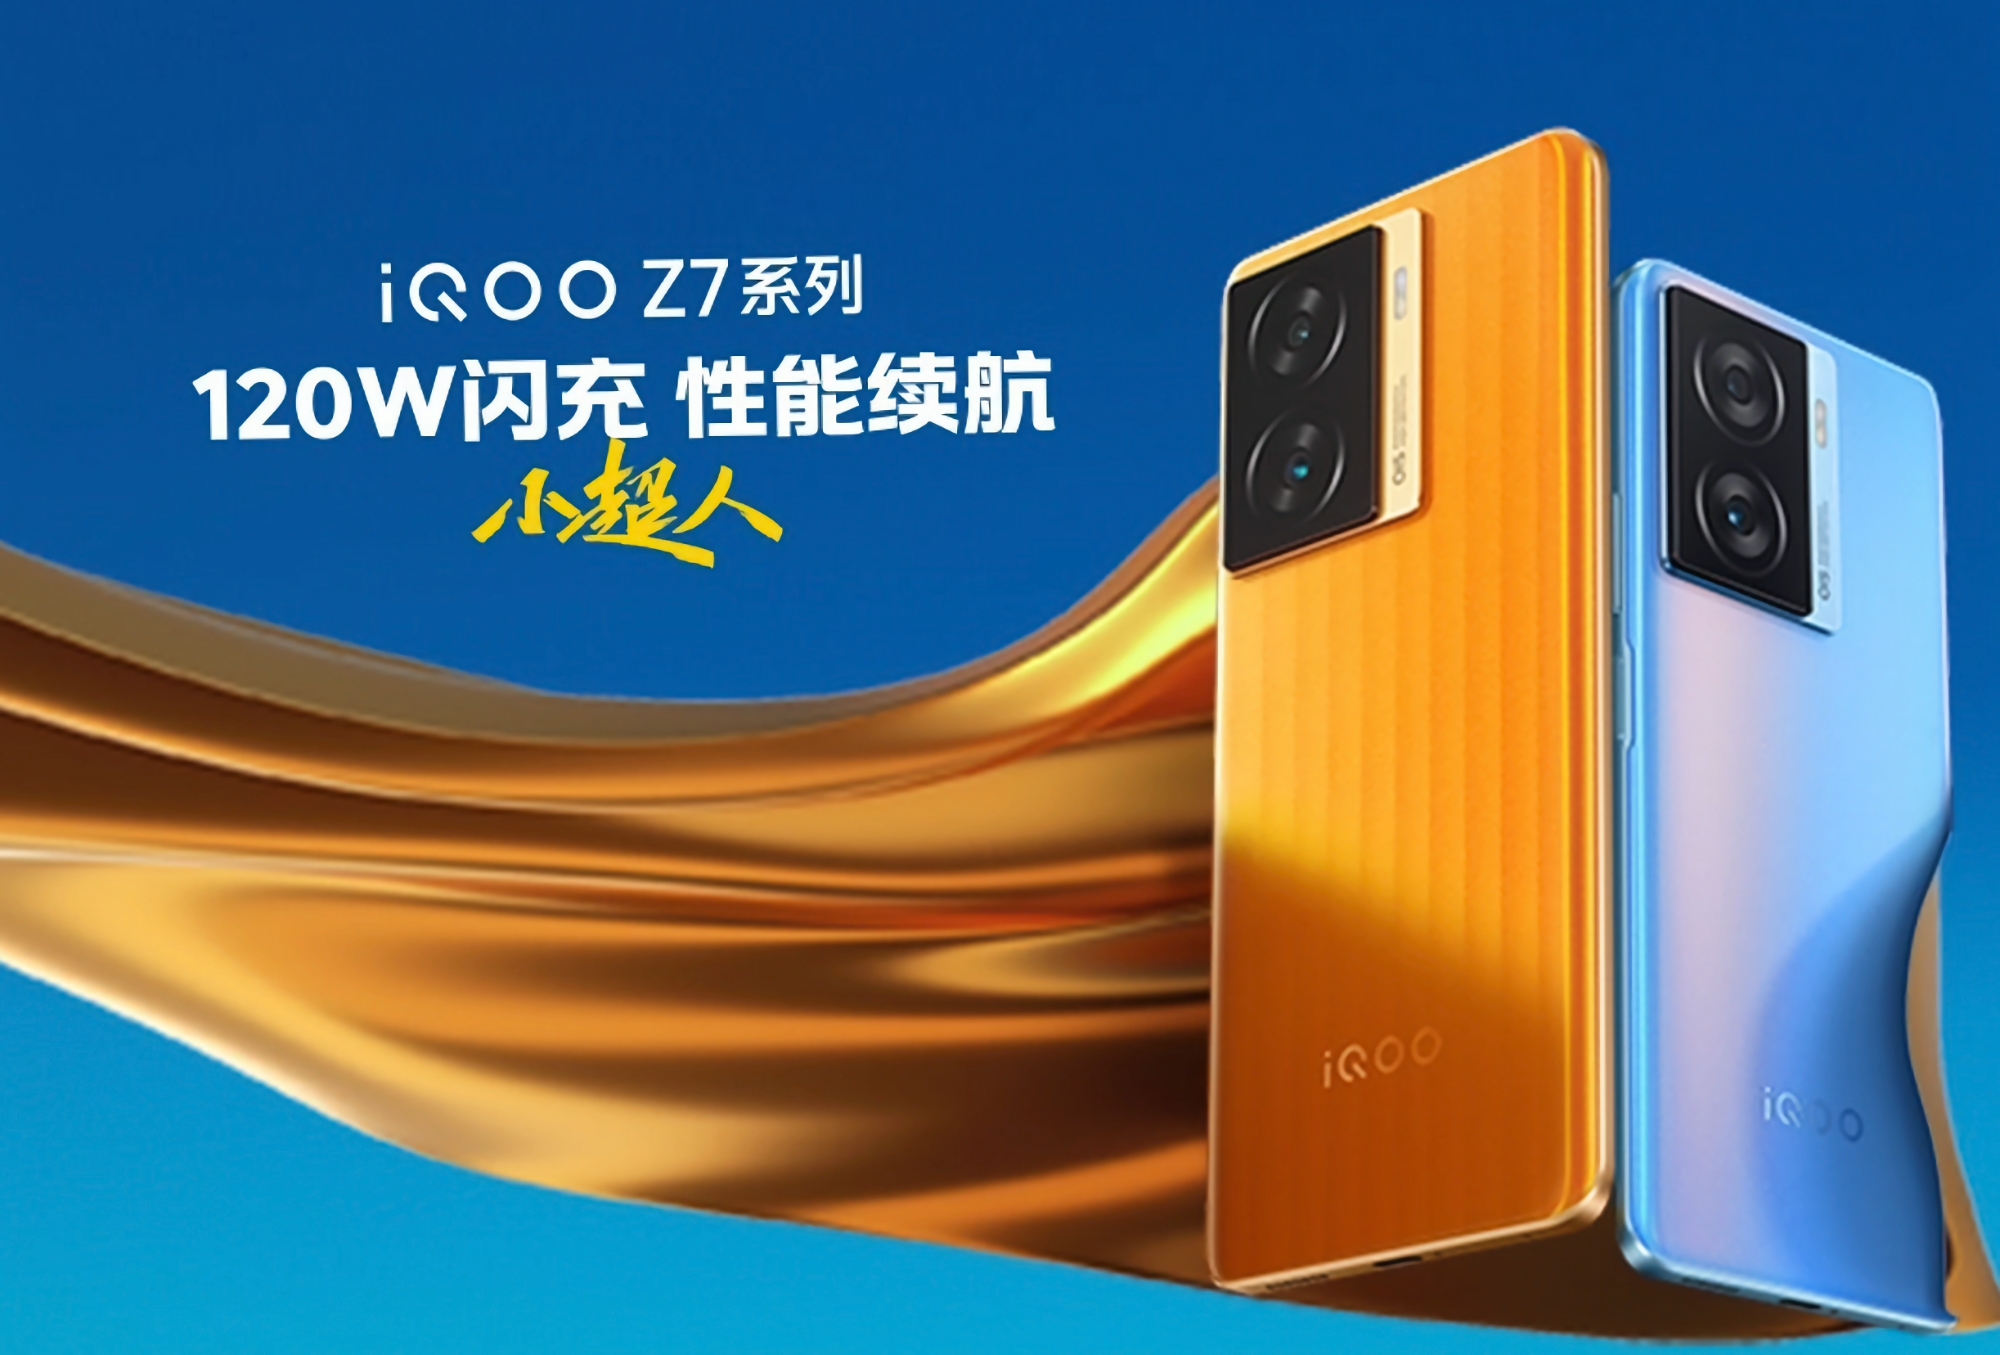 E' ufficiale: vivo presenterà gli smartphone iQOO Z7 e iQOO Z7x al lancio del 20 marzo.